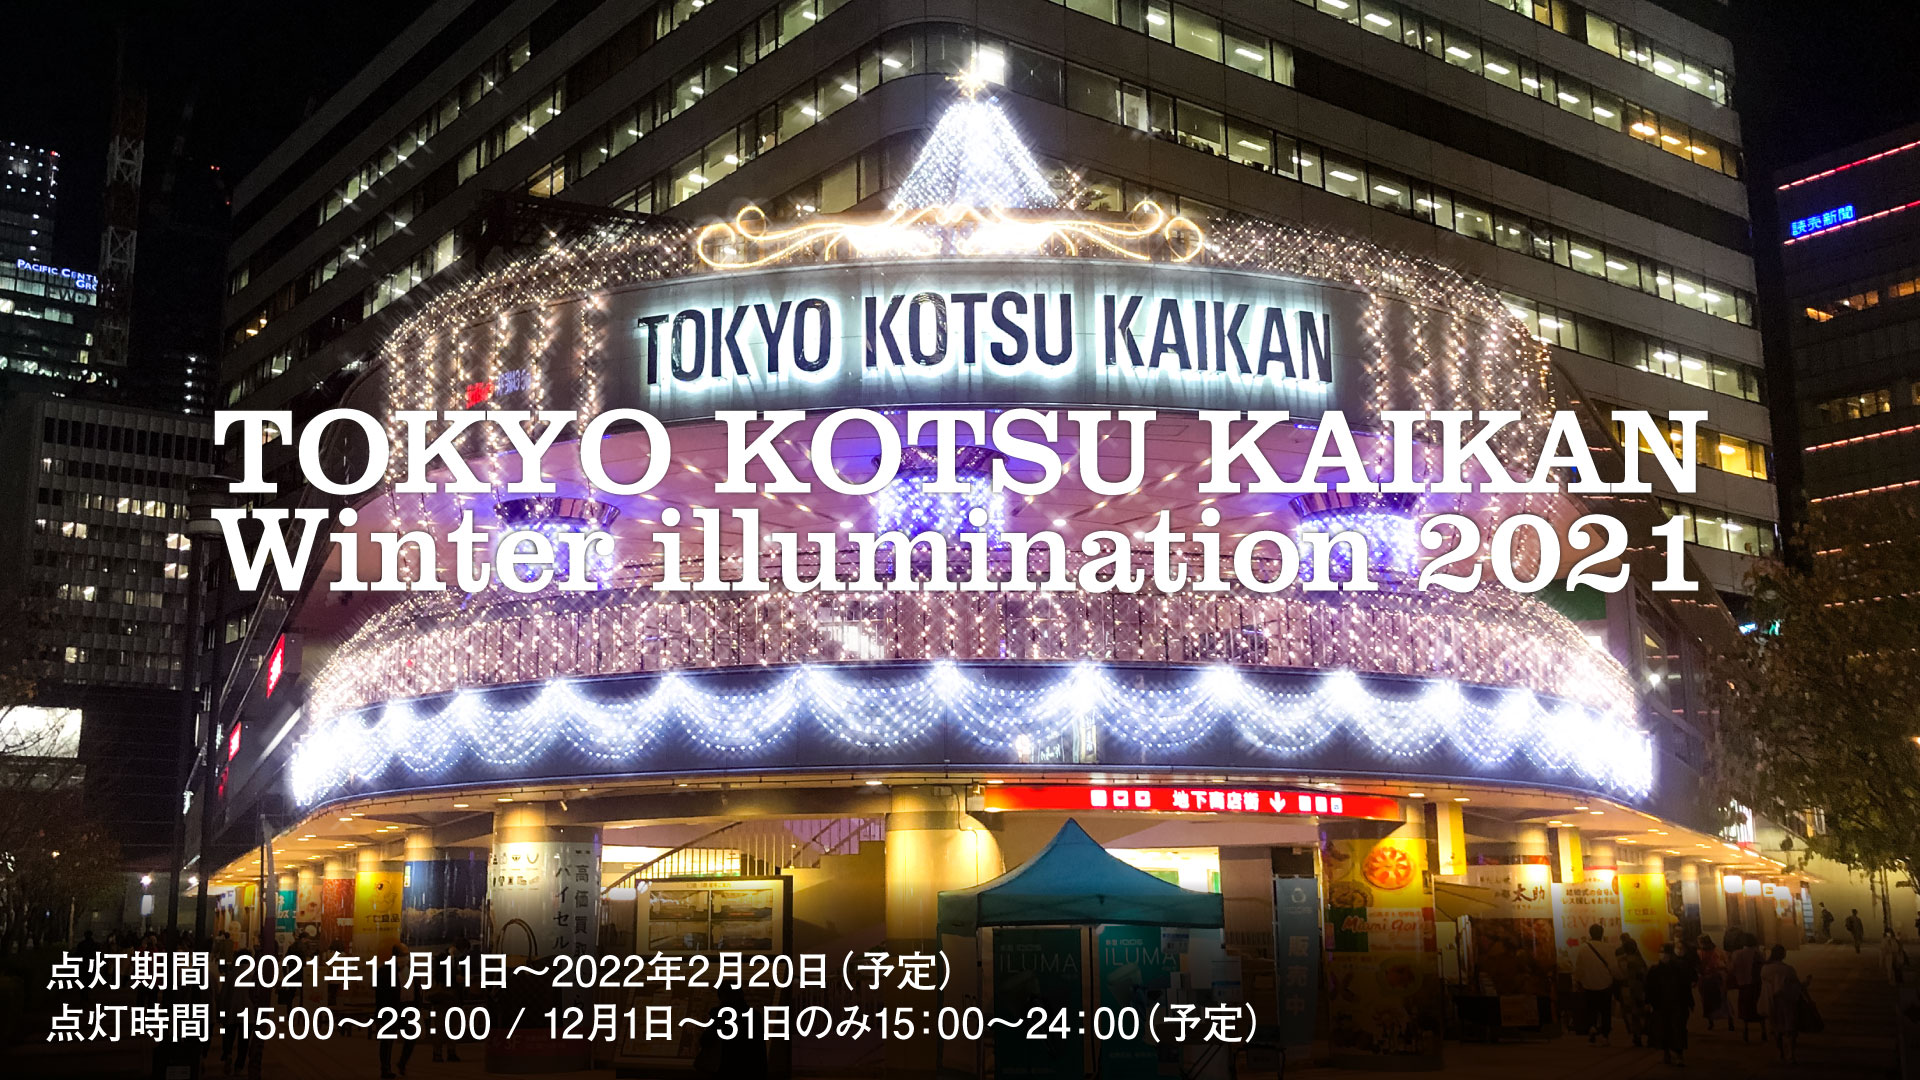 TOKYO KOTSU KAIKAN Winter illumination 2021